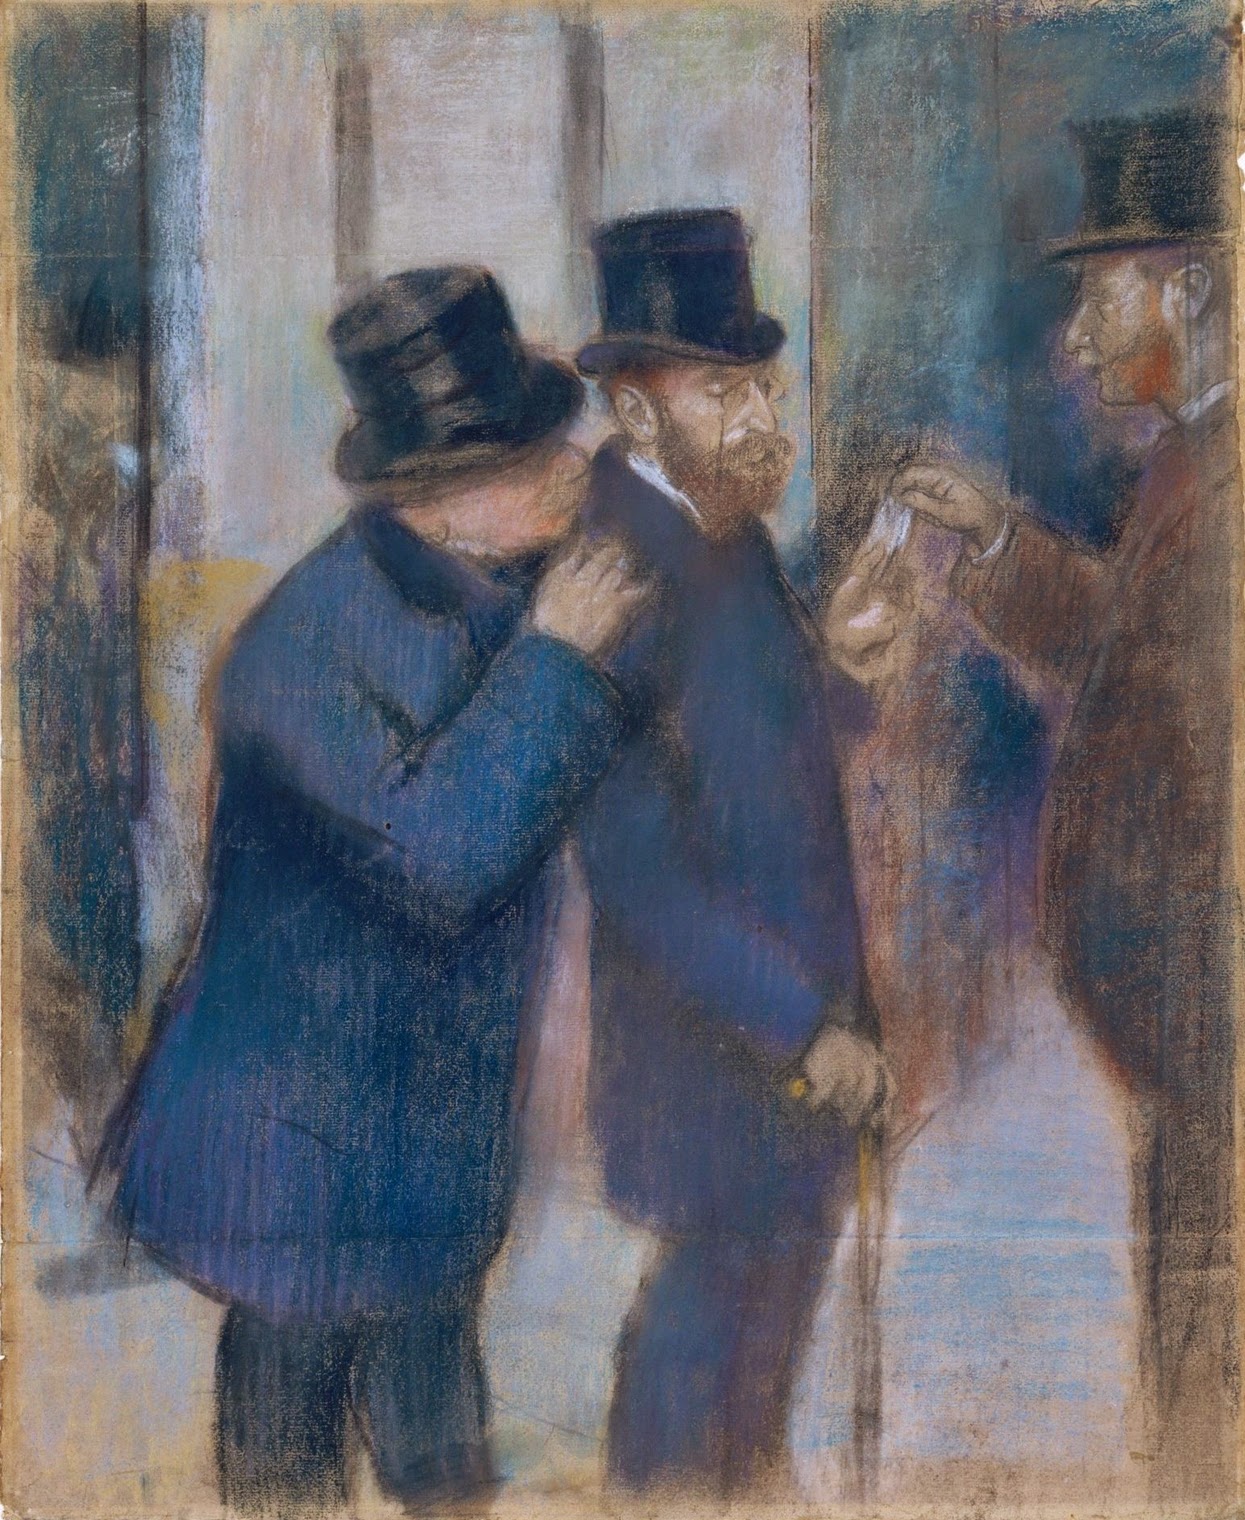 Edgar+Degas-1834-1917 (176).jpg